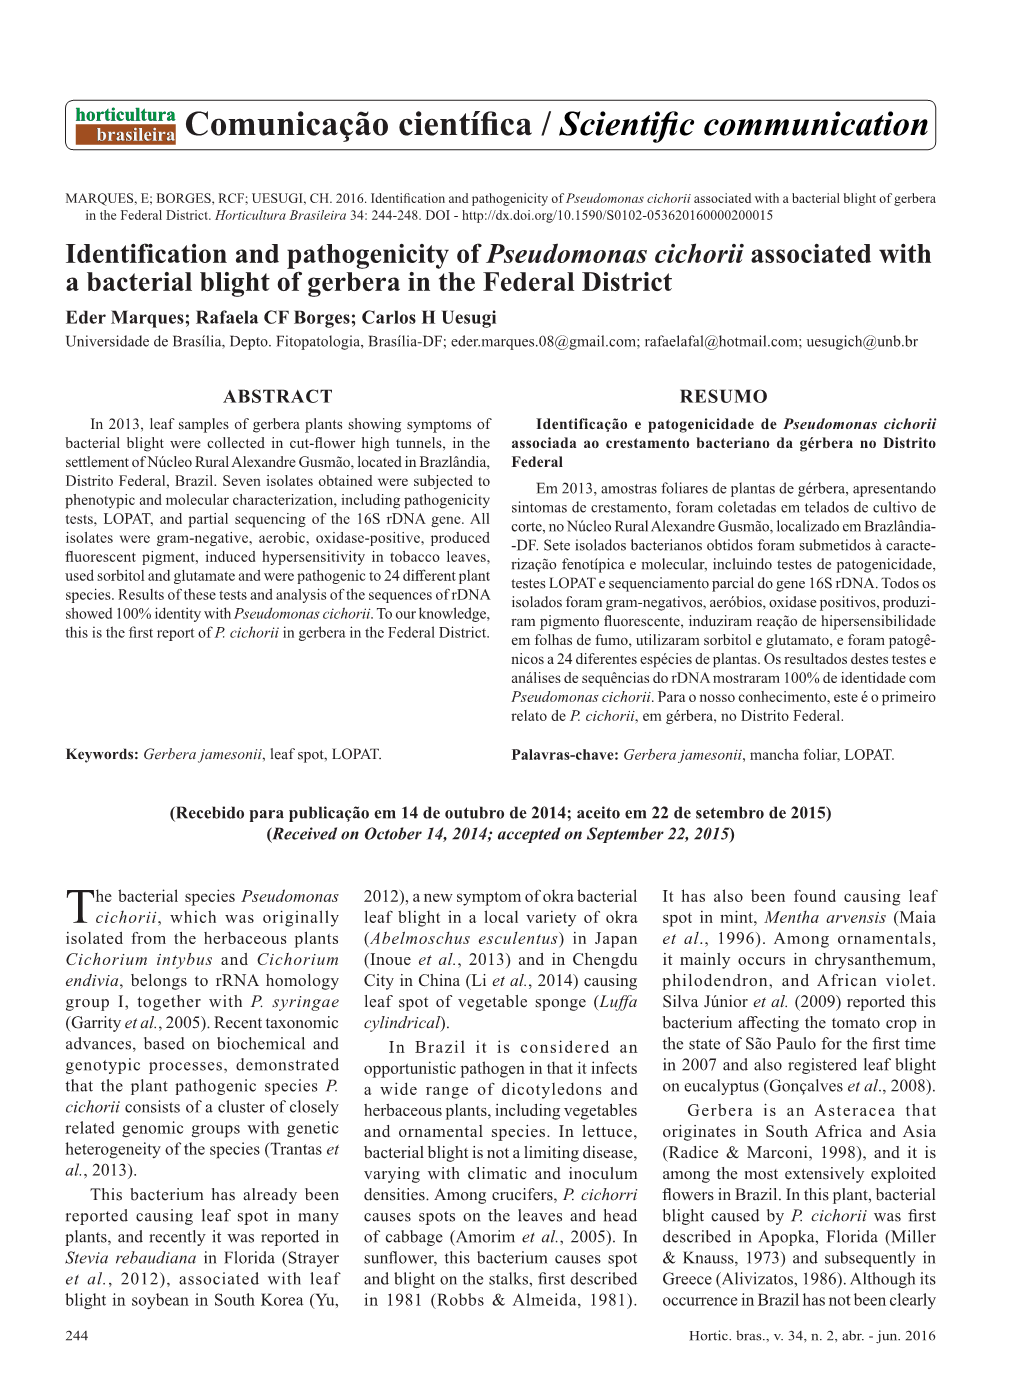 Identification and Pathogenicity of Pseudomonas Cichorii